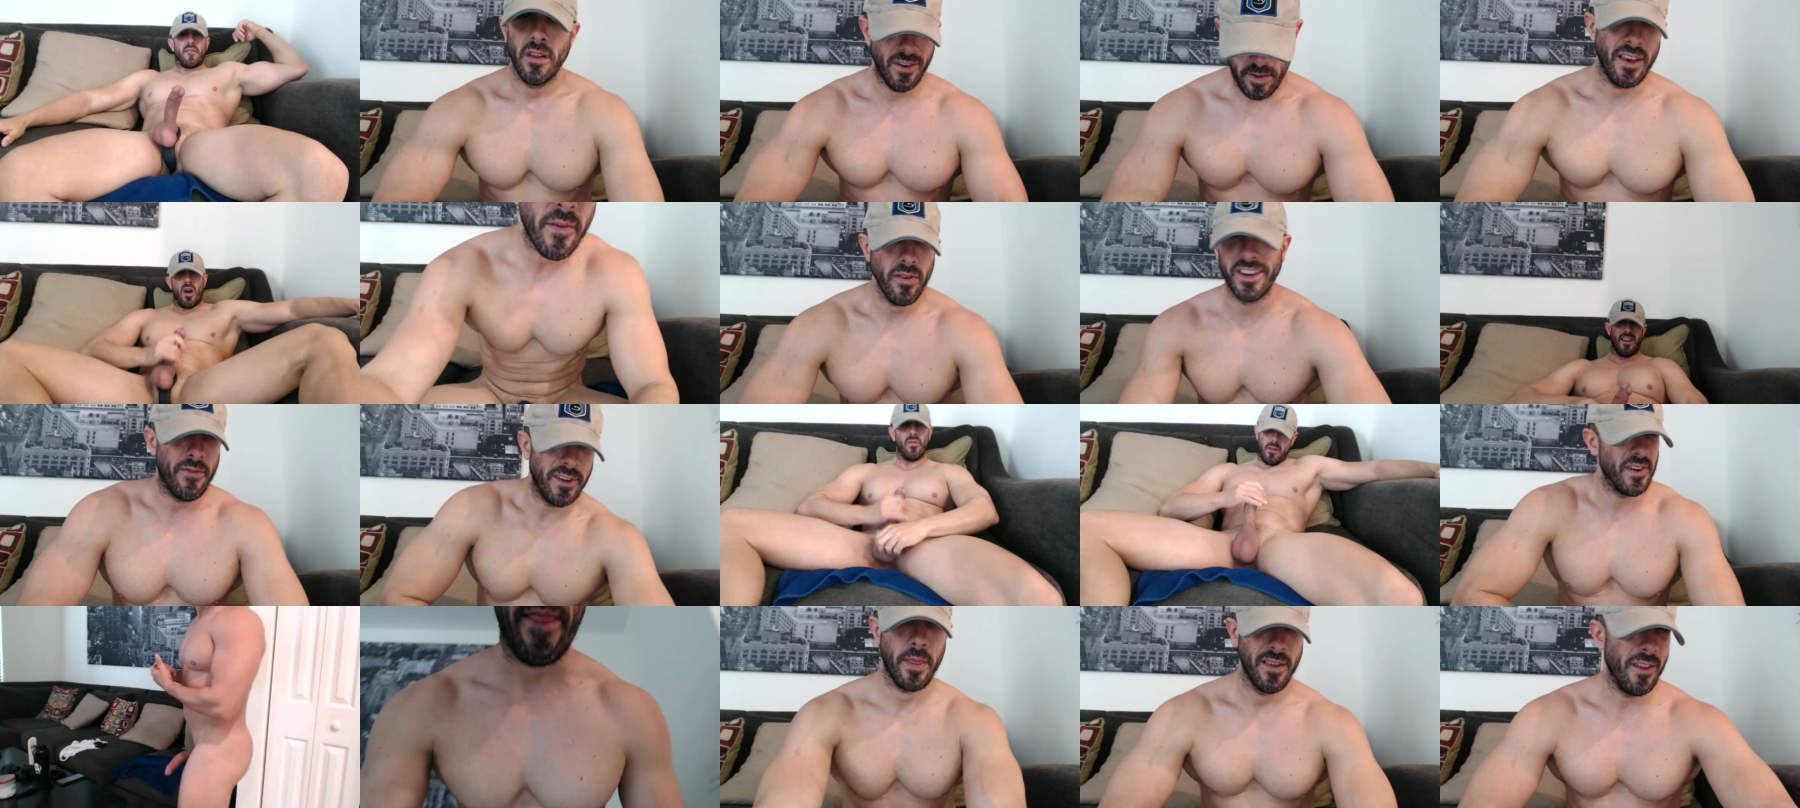 Nerdmuscles2x  06-10-2021 Male Porn